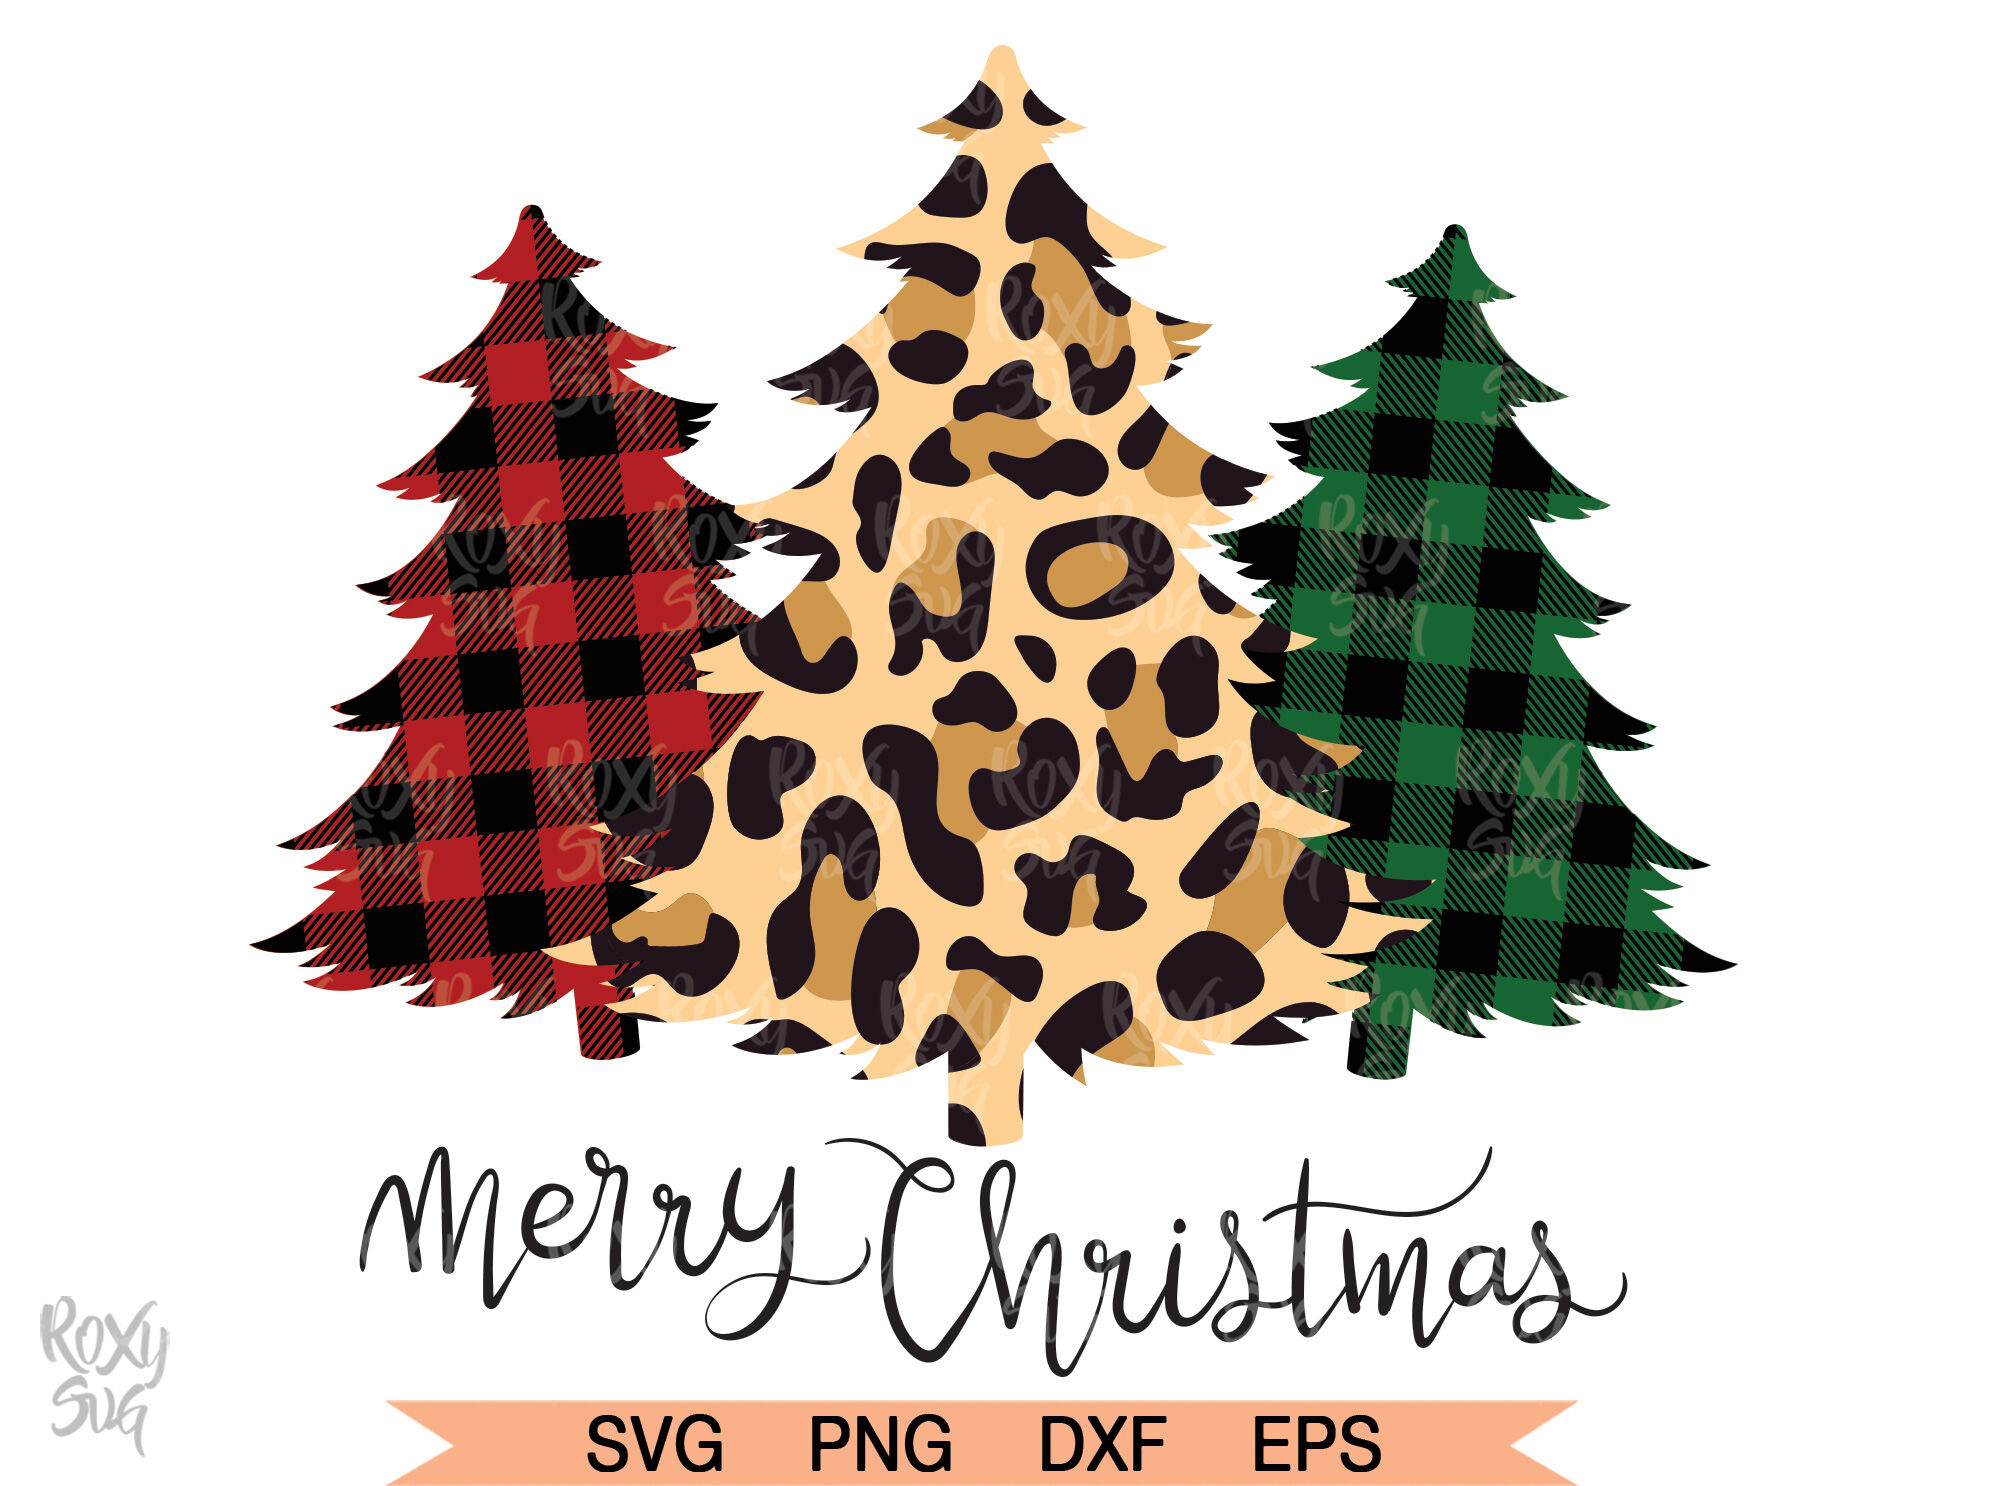 Merry Christmas SVG, Christmas Tree SVG, Christmas svg, Christmas By